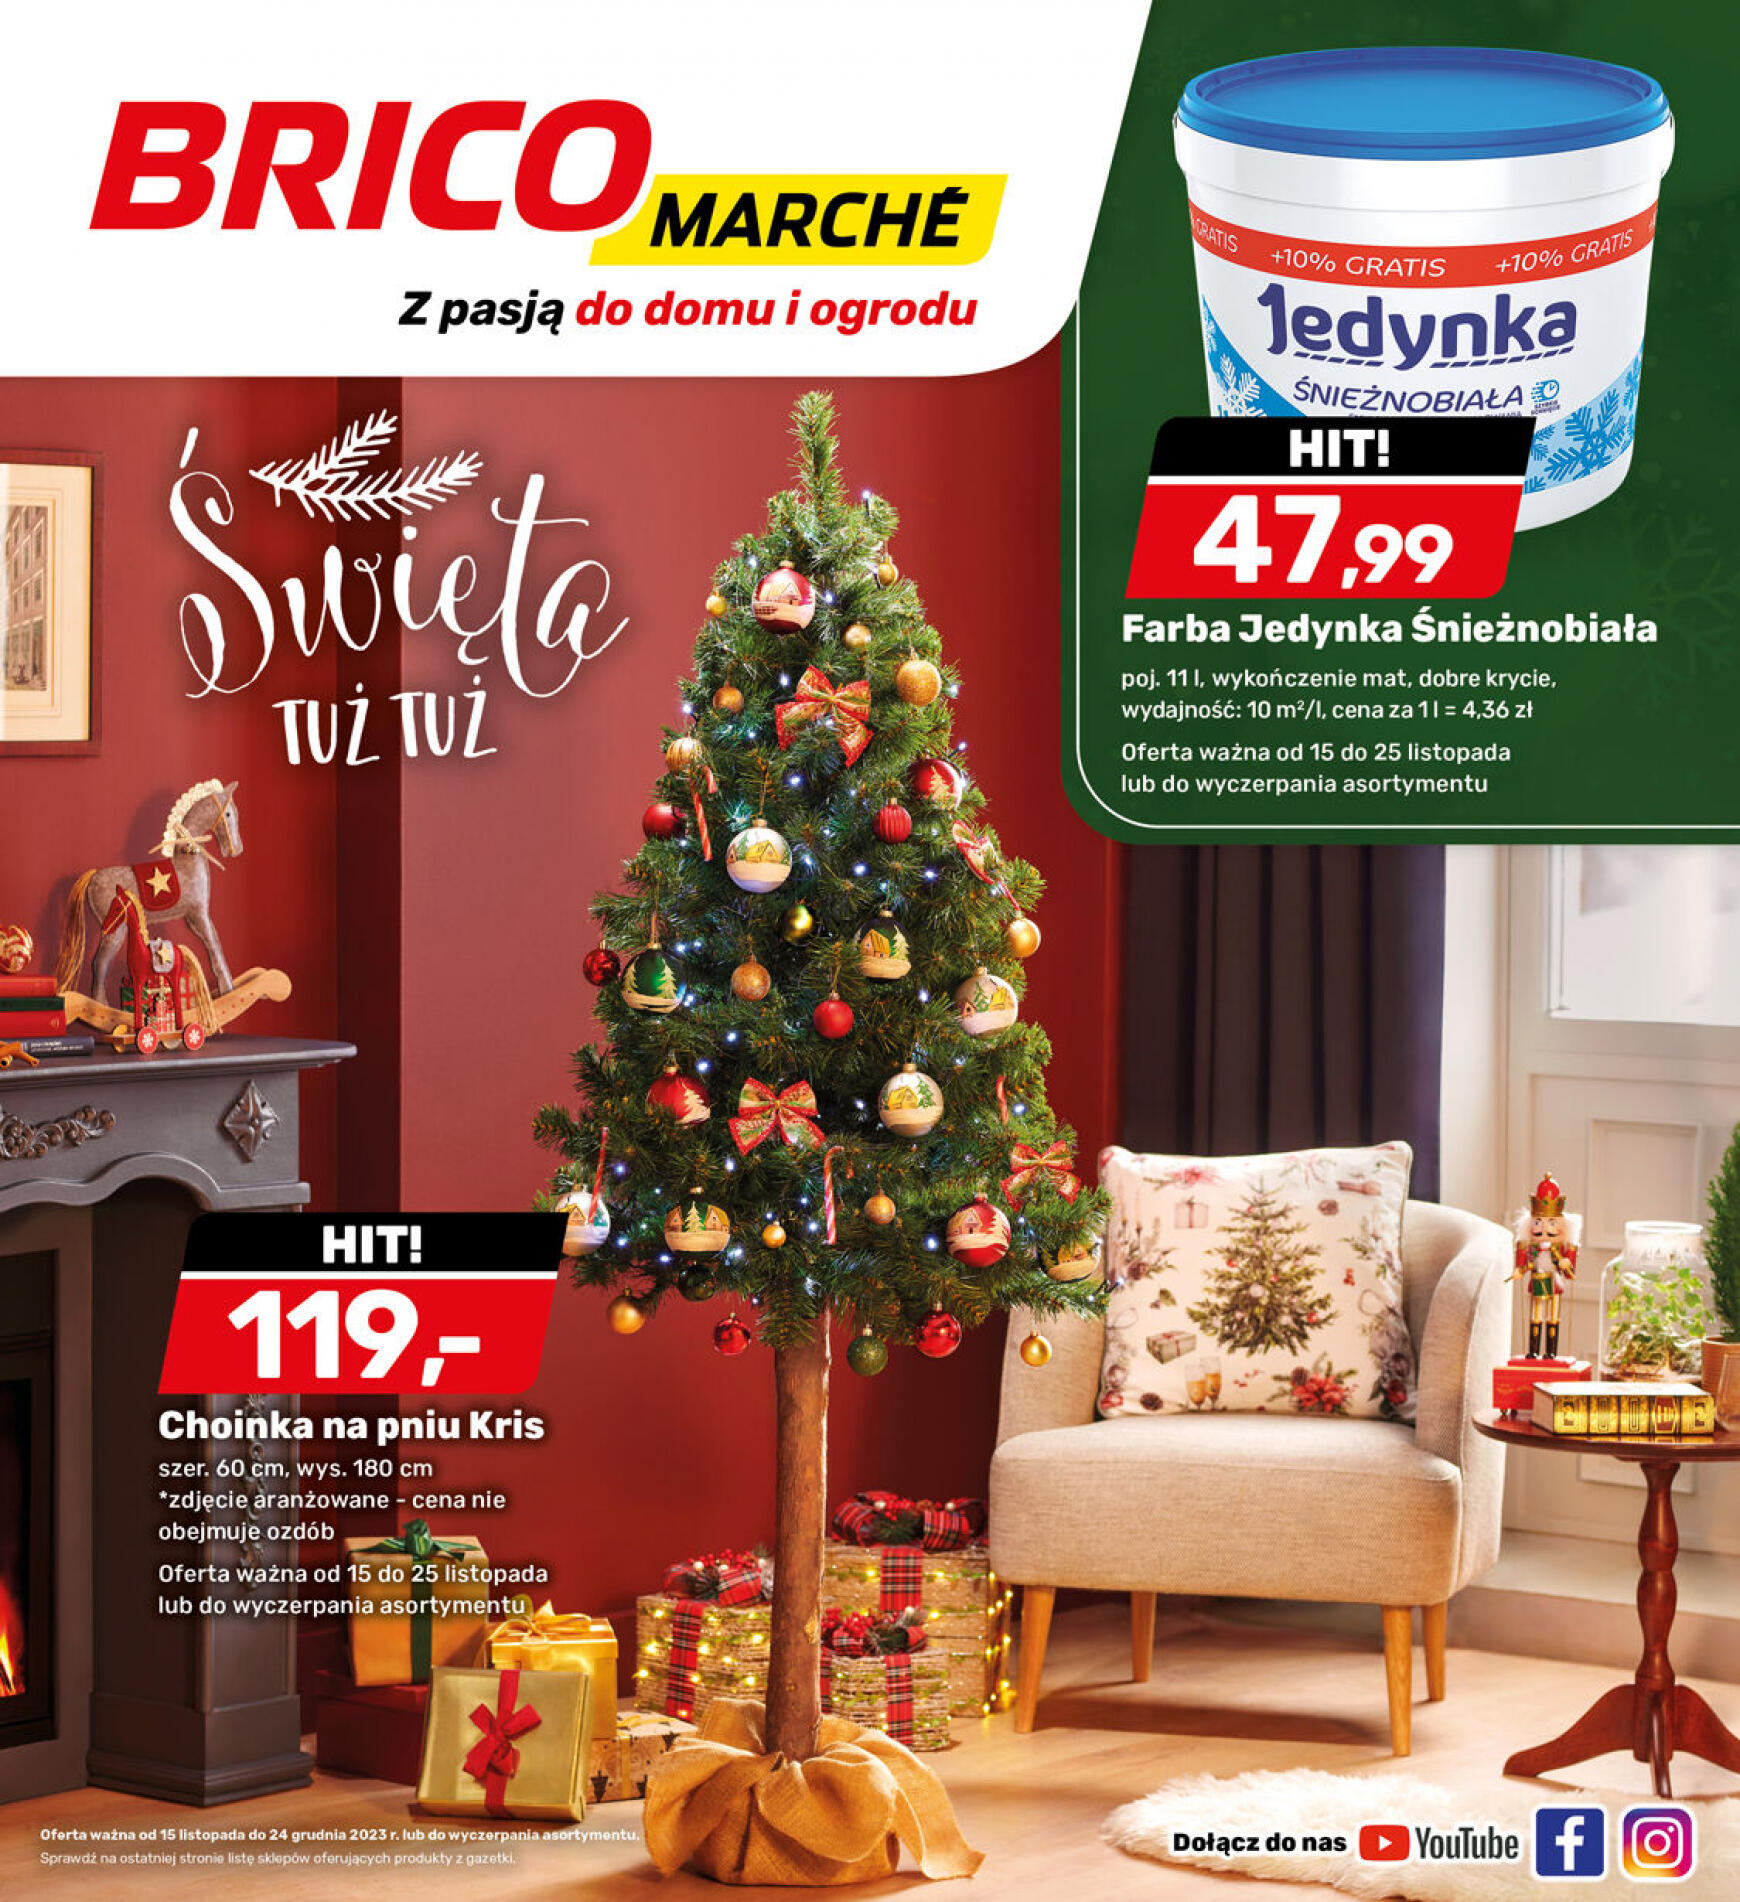 brico-marche - - Bricomarche - page: 1